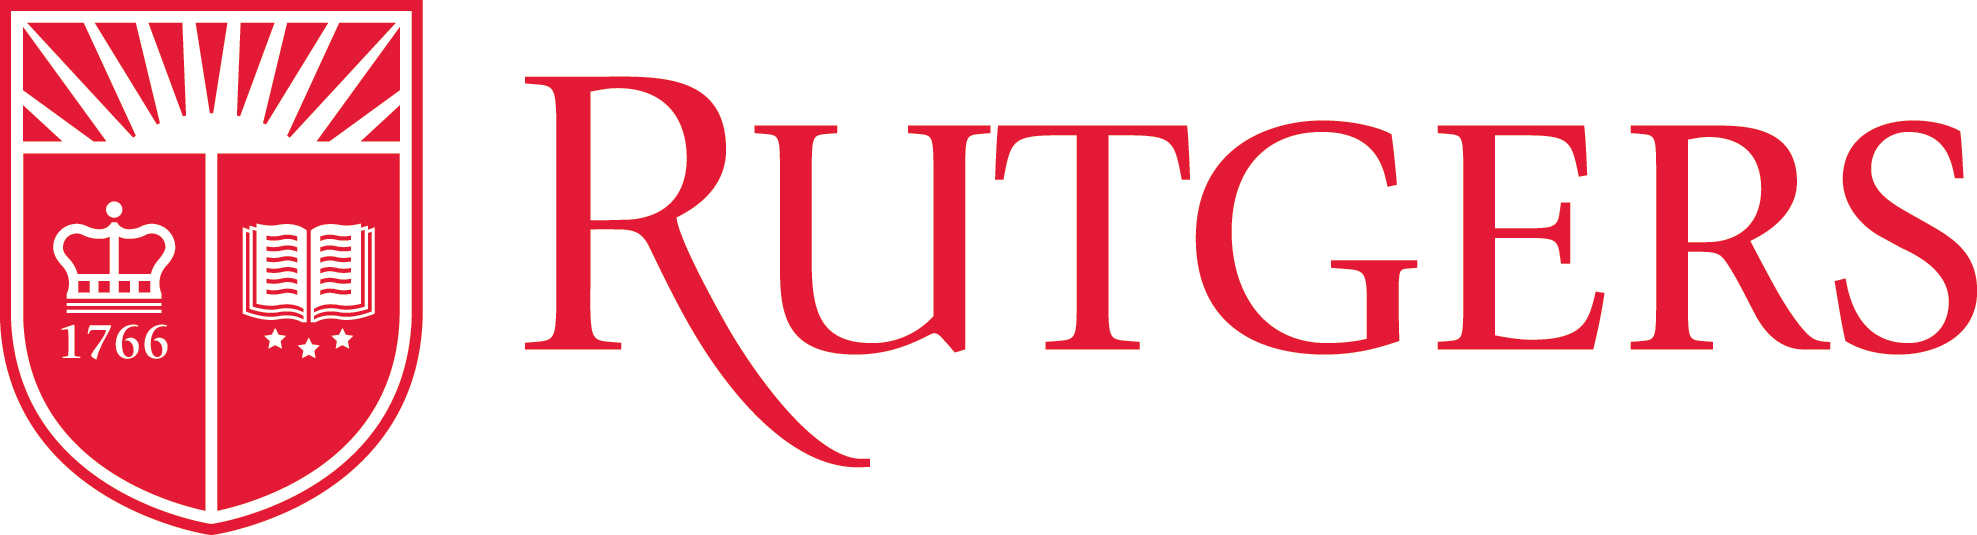 Rutgers Logo - Rutgers Logos